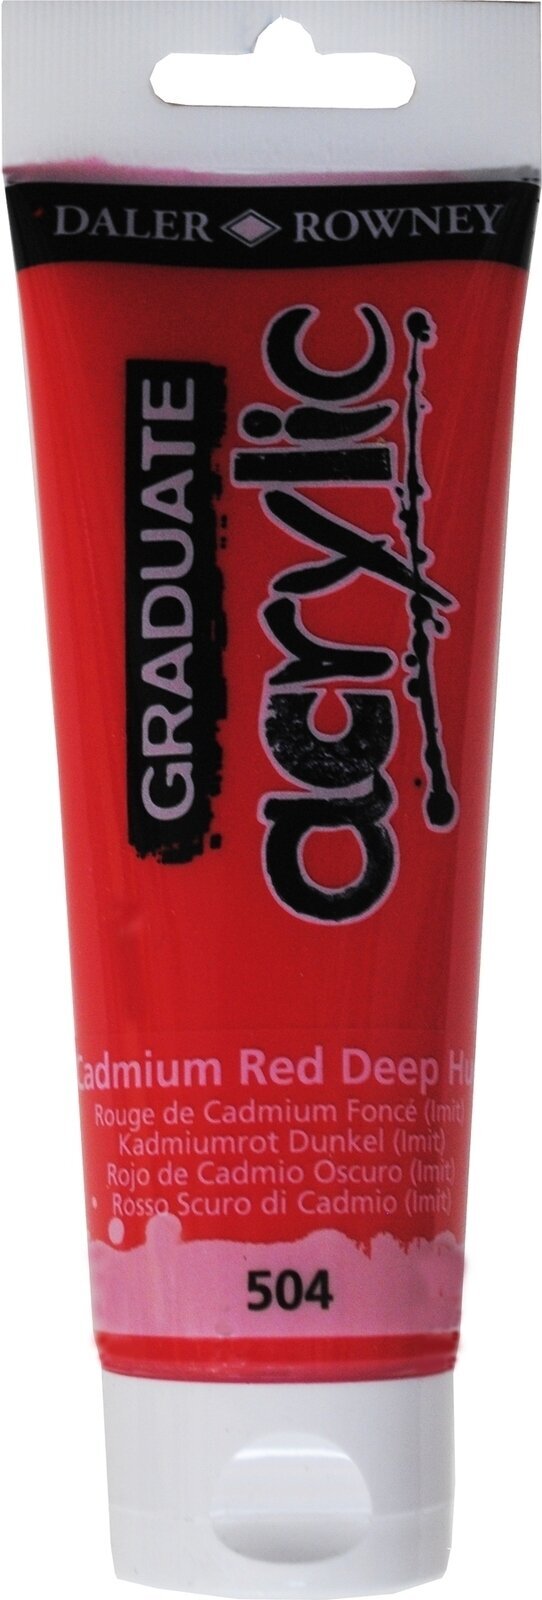 Akrylová farba Daler Rowney Graduate Akrylová farba Cadmium Red Deep Hue 120 ml 1 ks